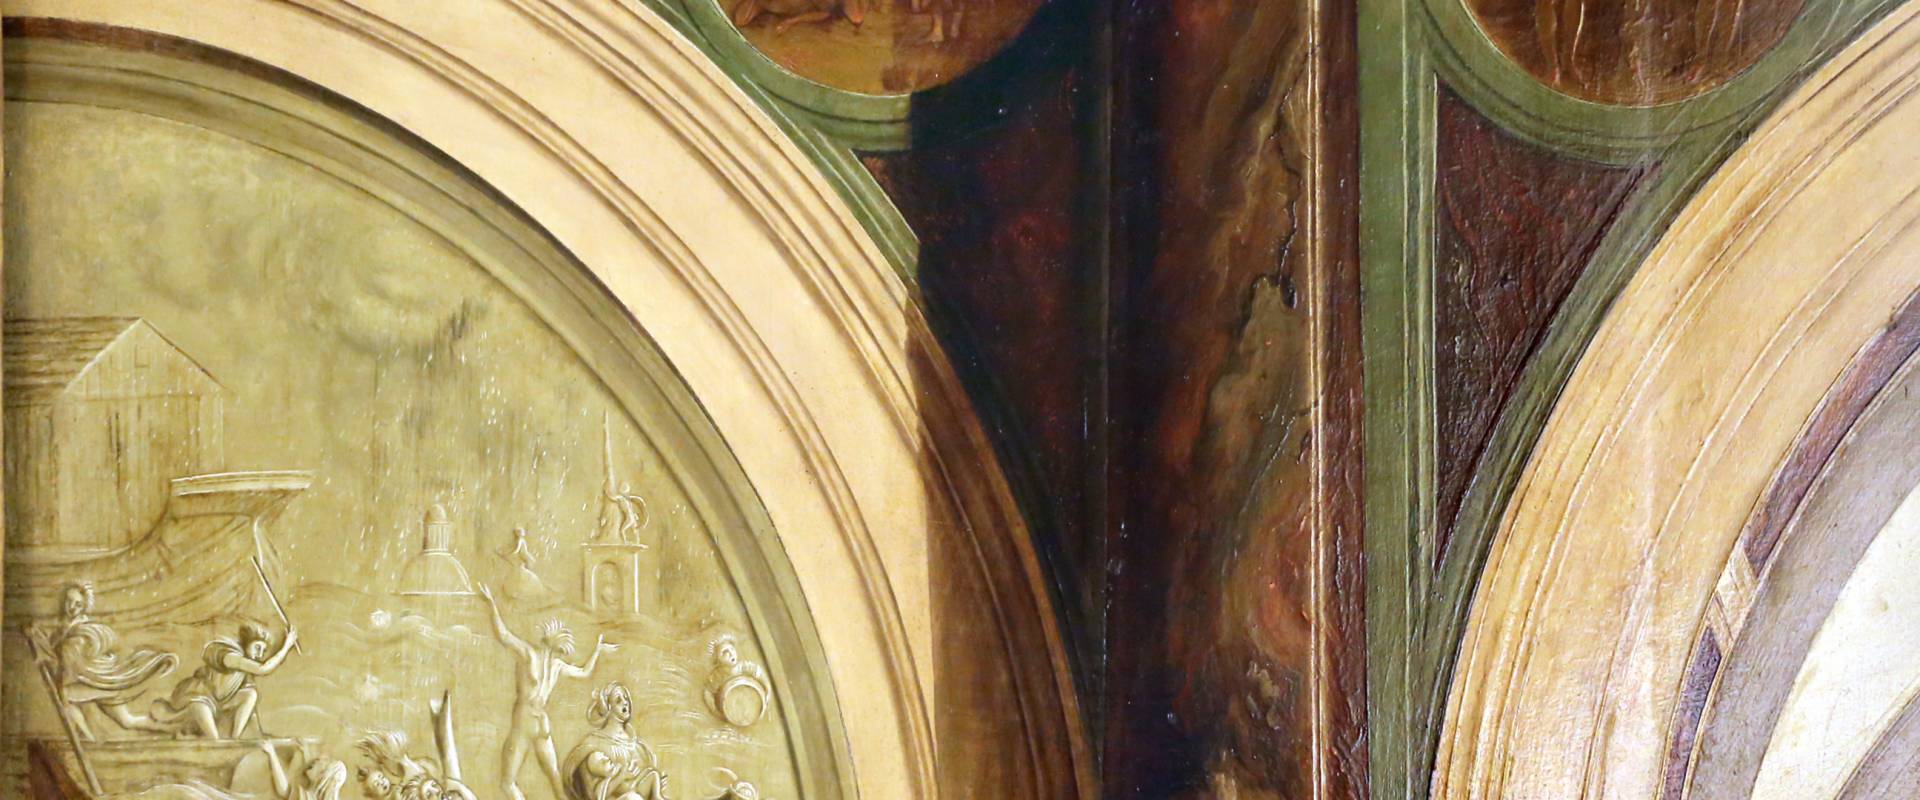 Francesco bianchi ferrari e giovanni antonio scacceri, annunciazione, 1506-12, 02 medaglioni photo by Sailko